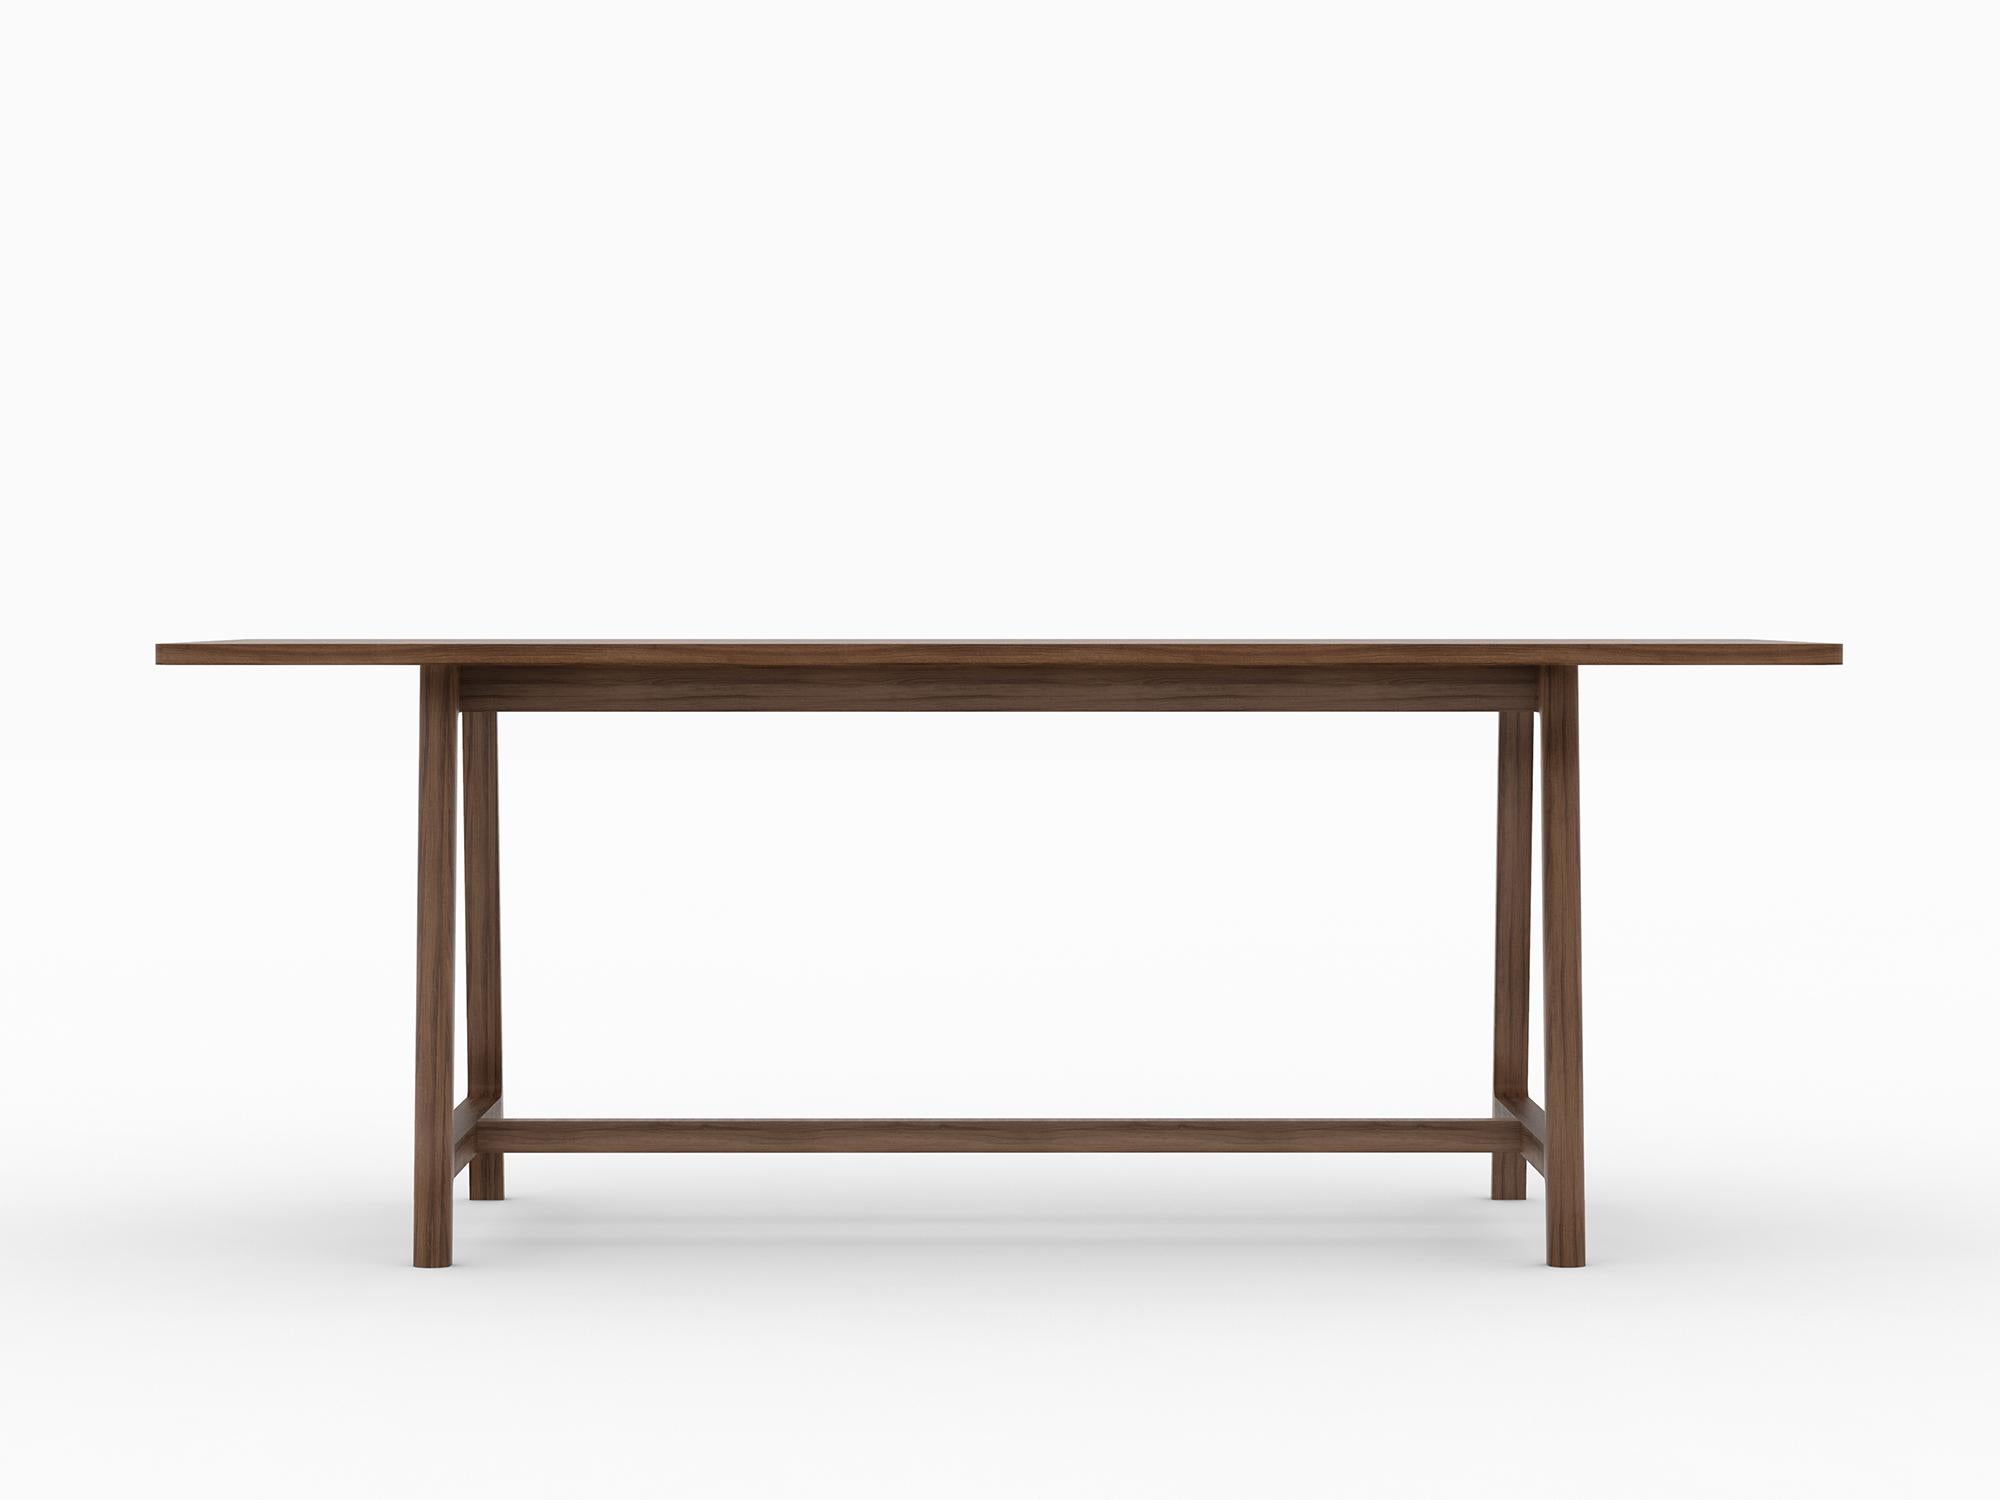 La collection Frame est le trio parfait pour tout espace de rassemblement. La collection comprend une table, une chaise et un banc, contenant tout ce dont on a besoin pour une réunion confortable.

D'un design simple mais sculptural et explicite, la